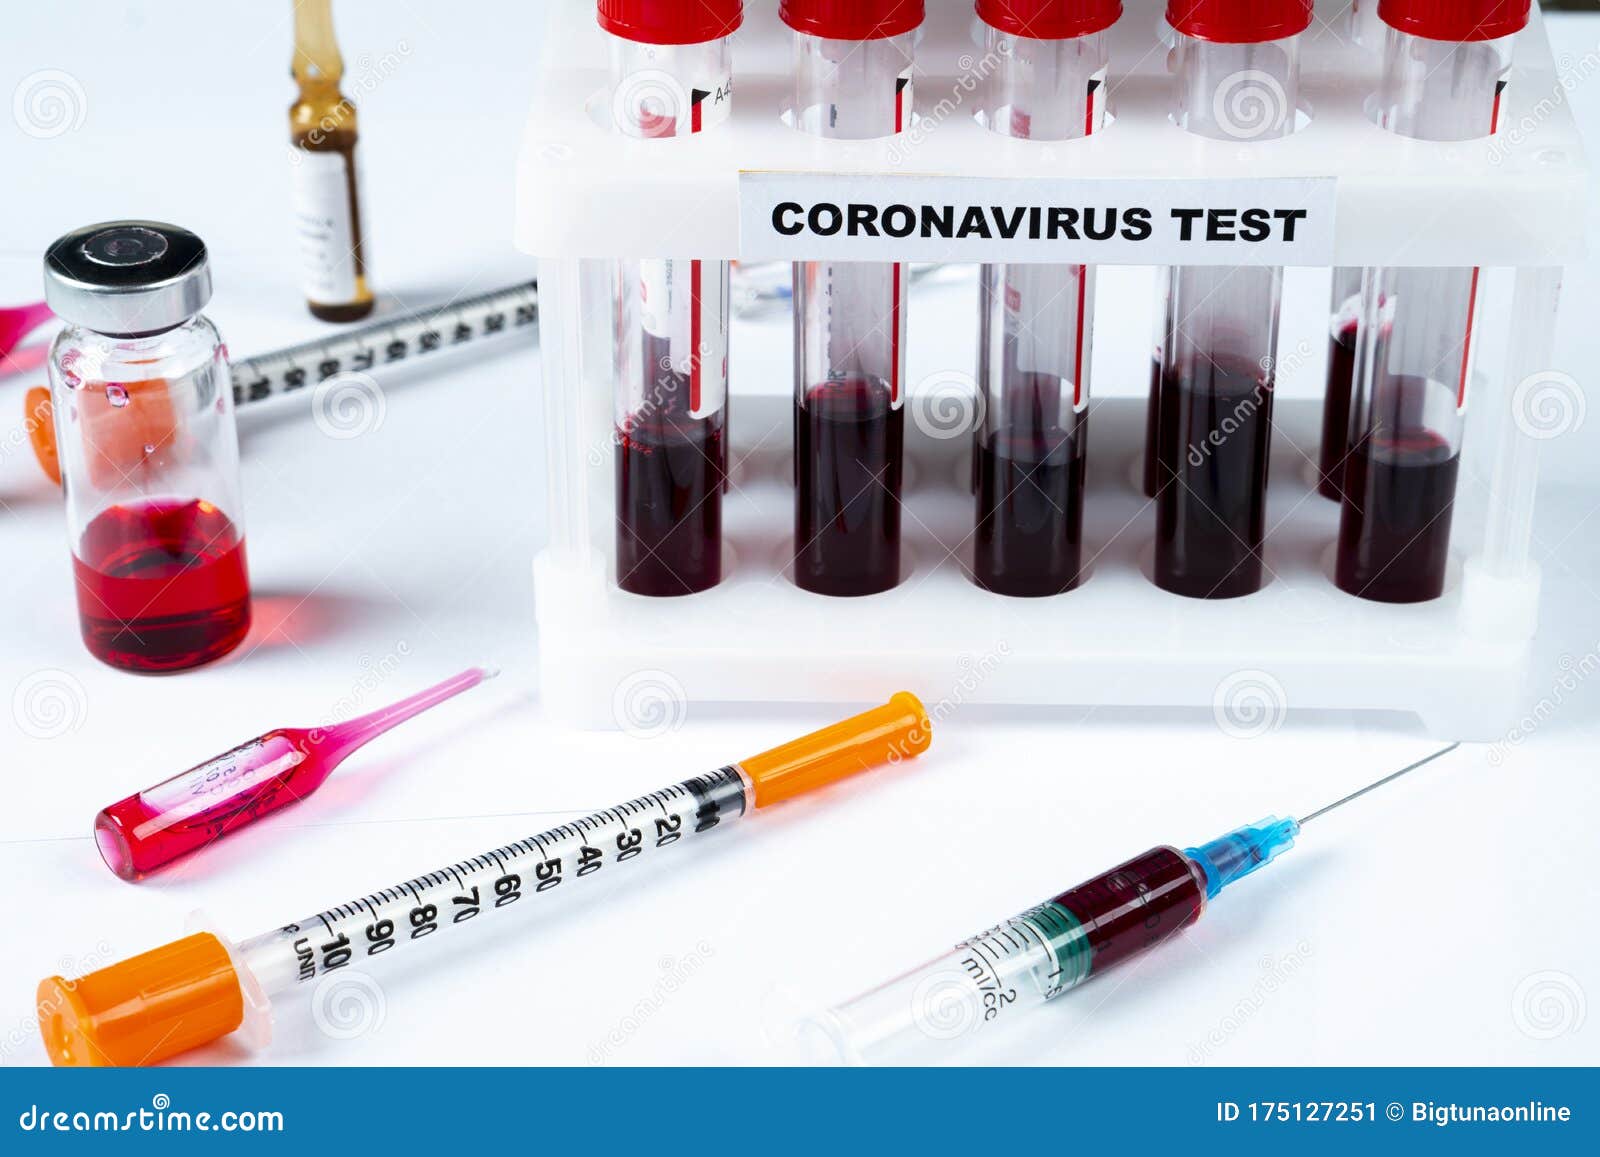 Почему кровь темная из вены. Старые пробирки для крови. Пробирка для анализа на коронавирус.